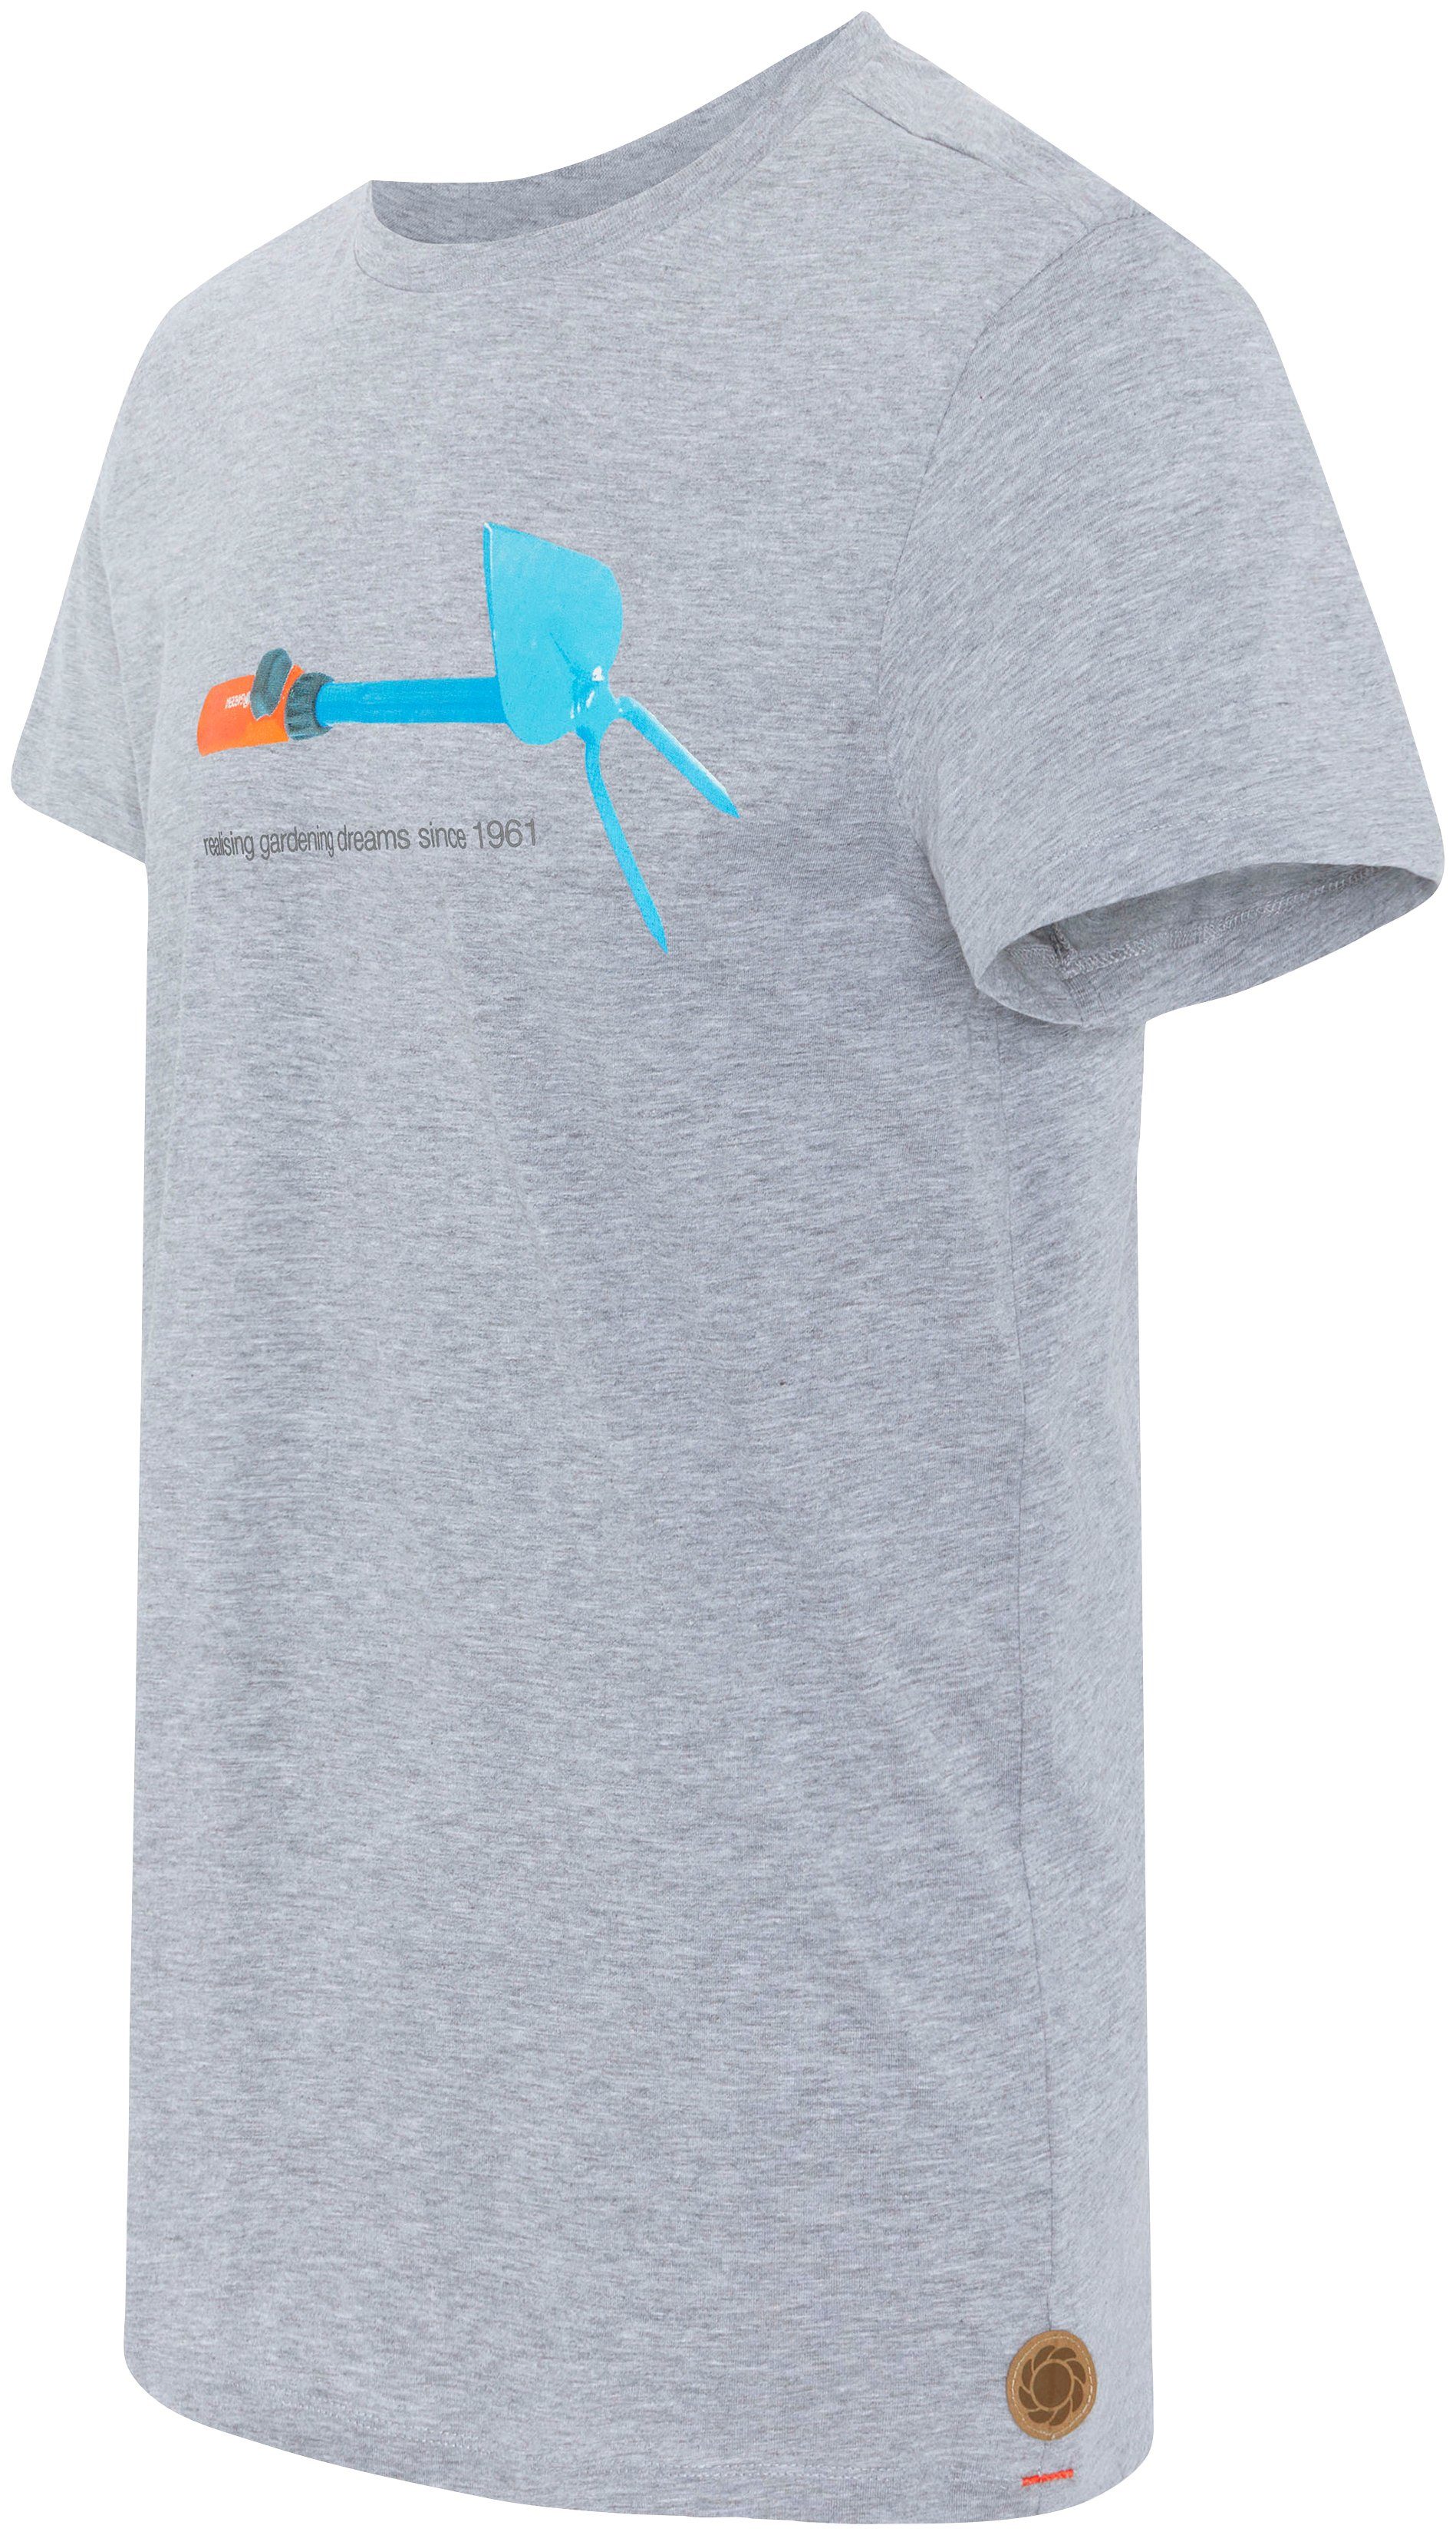 Melange GARDENA Aufdruck T-Shirt mit Grey Light